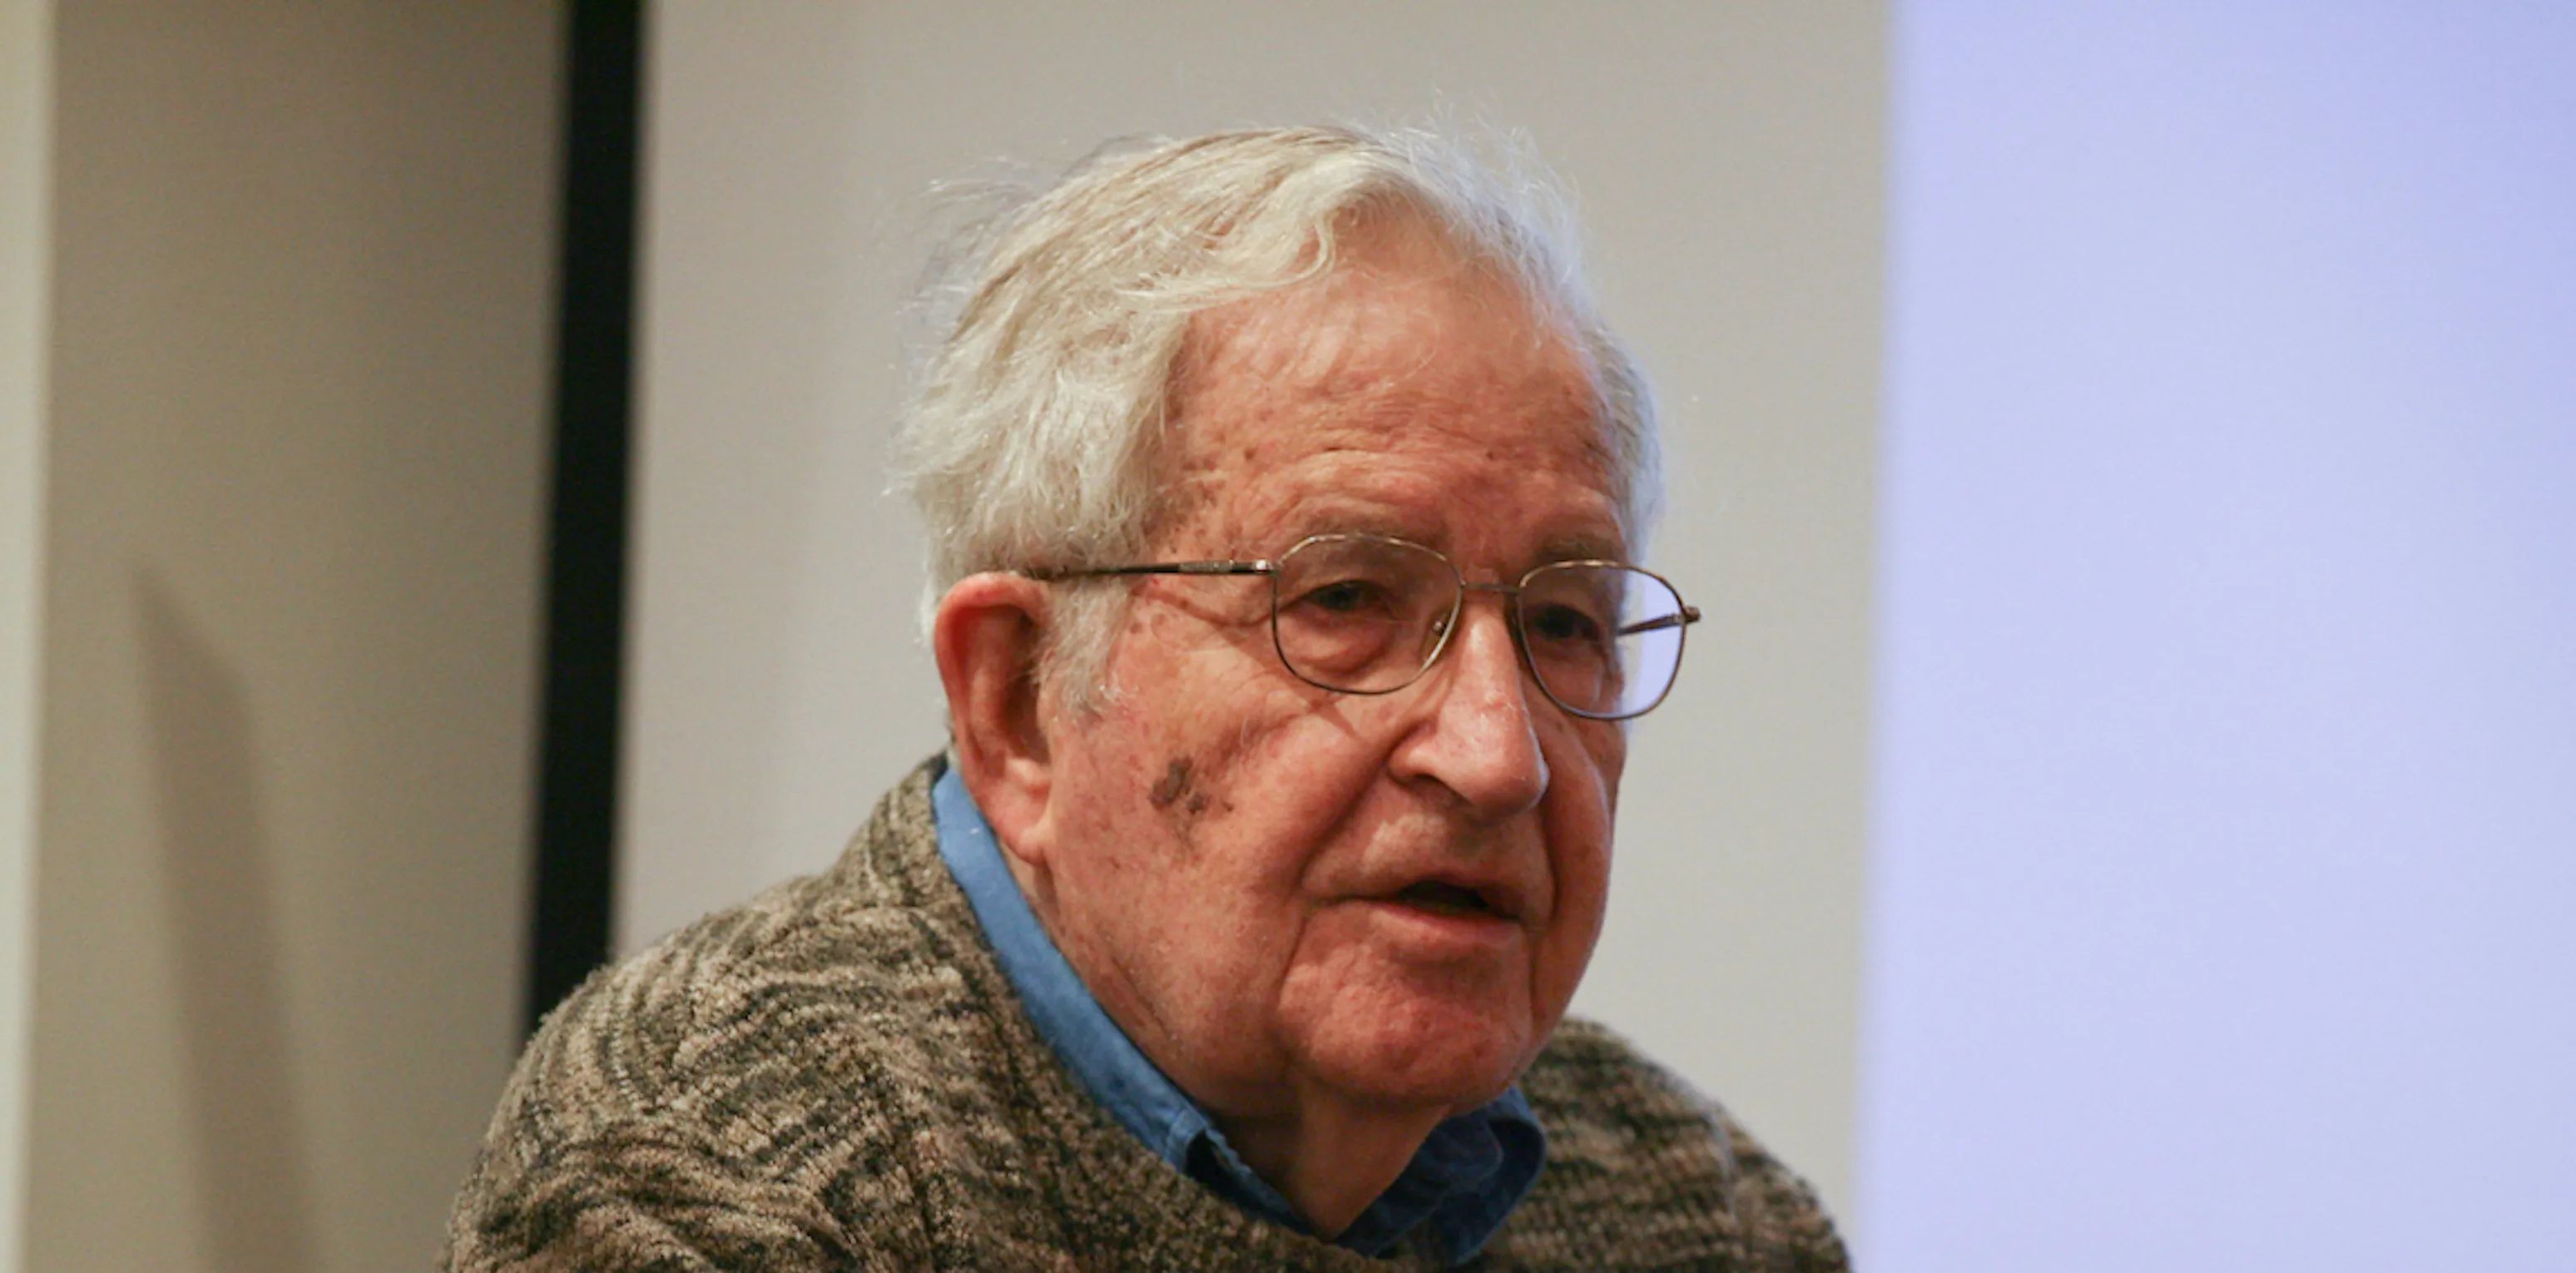 Philosopher Noam Chomsky delivers remarks.